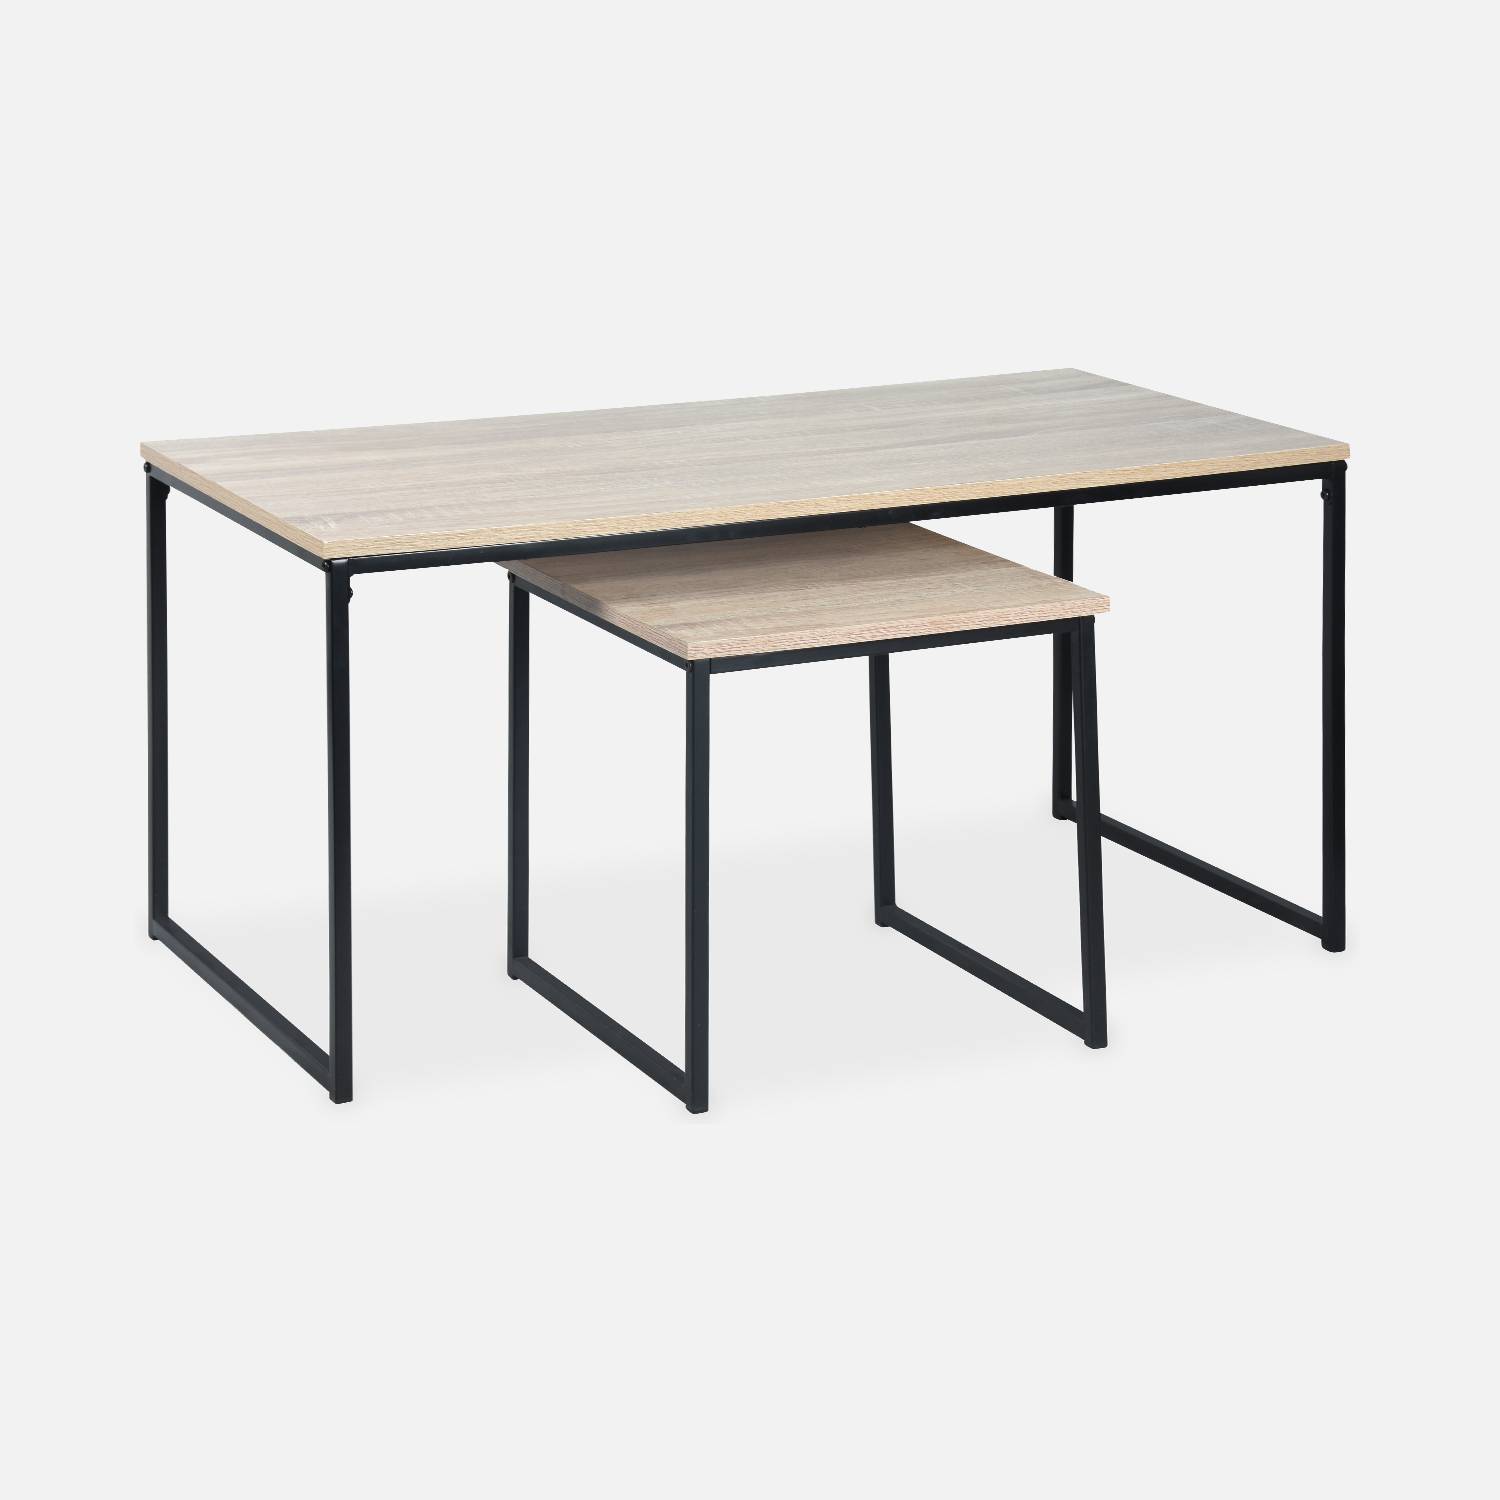  Tavolini da caffè in metallo e legno - Loft - Tavoli nidificanti, 100x48x48cm e 40x40x40cm Photo1